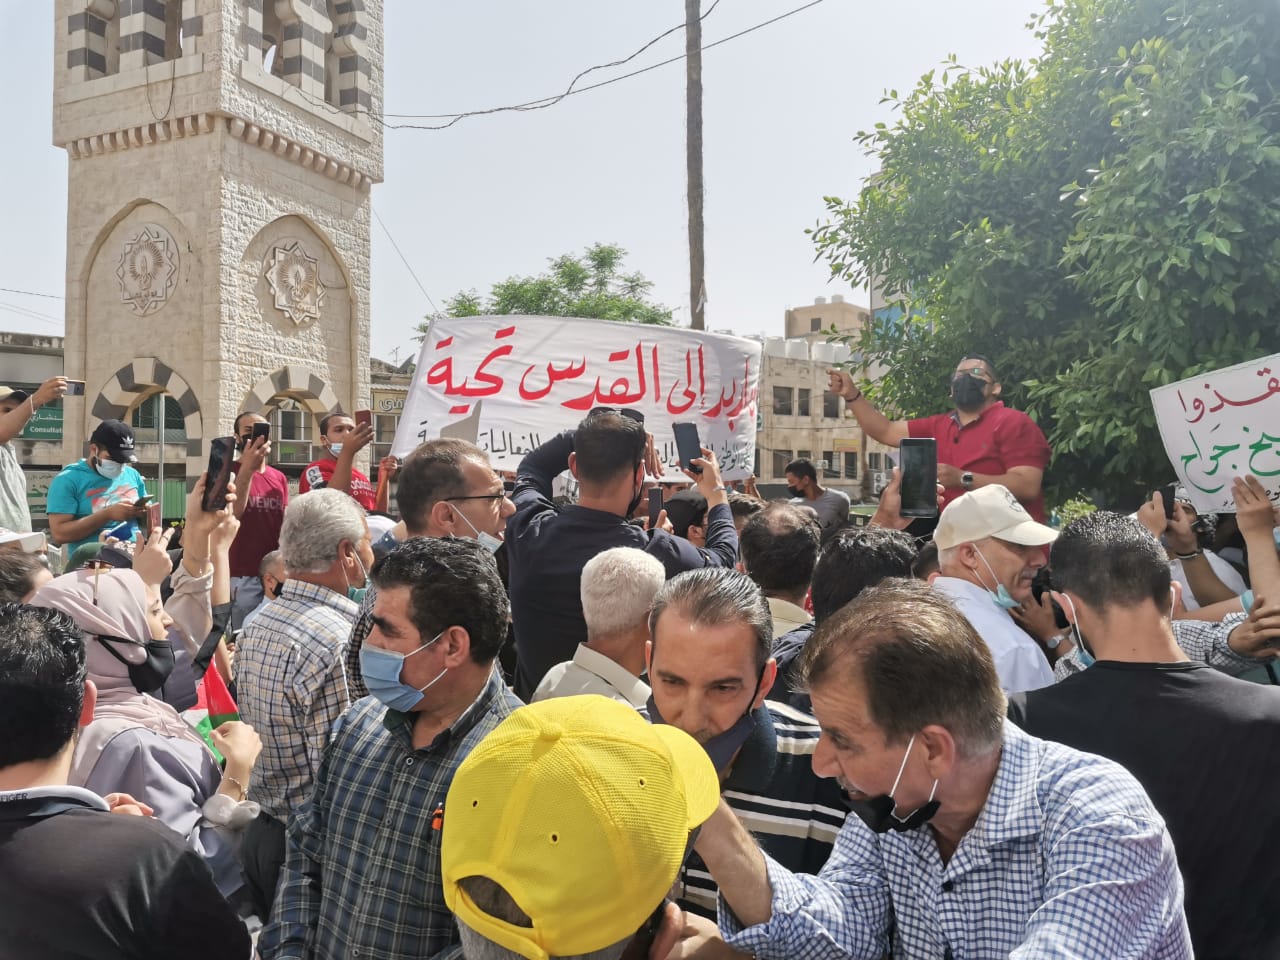 وقفة احتجاجية وسط مدينة إربد تنديدا بالاعتداءات الإسرائيلية على القدس. (المملكة)